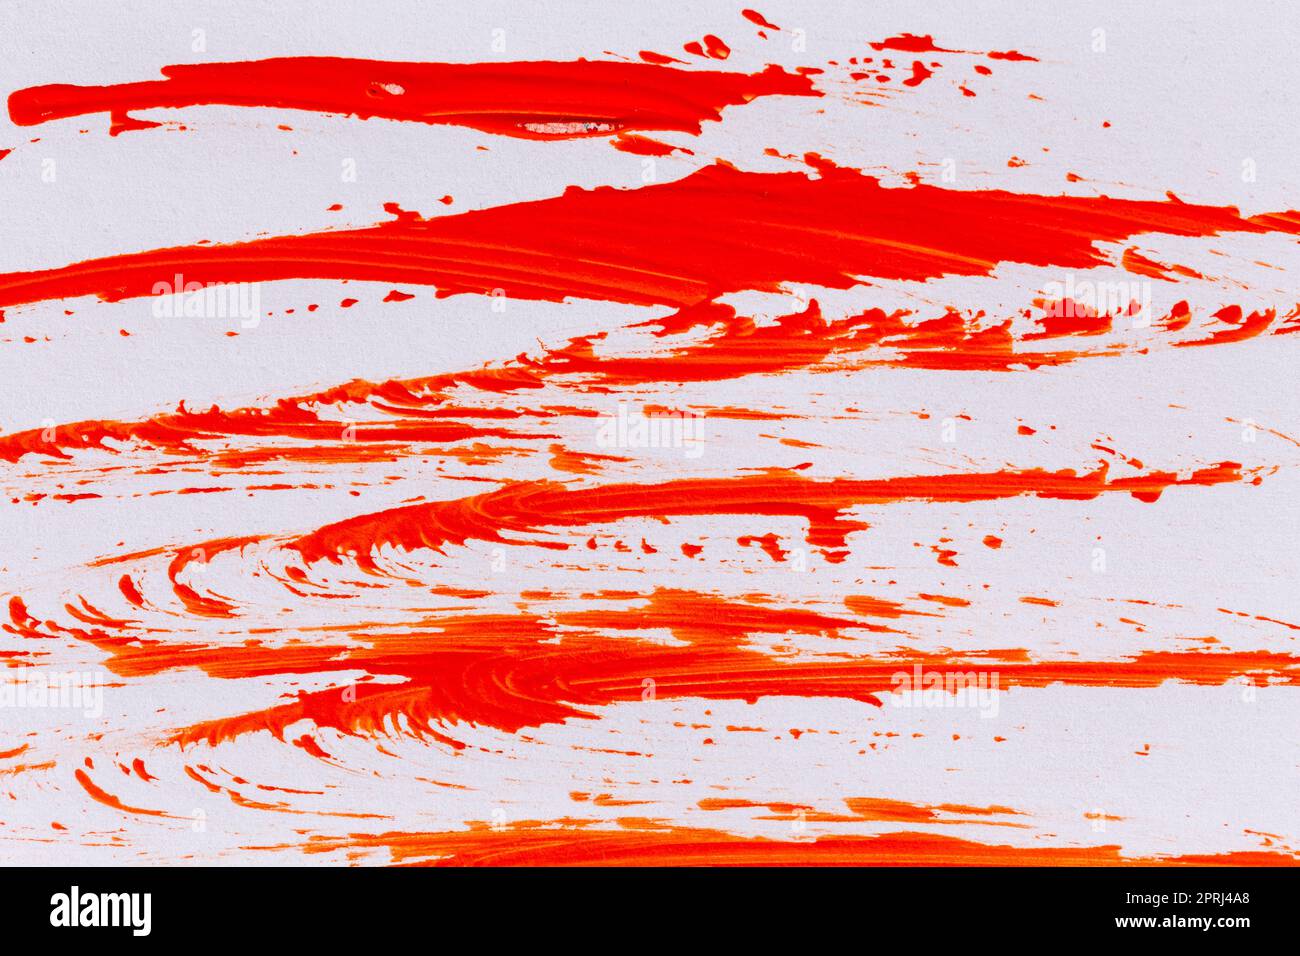 fond de texture peinture acrylique rouge orange Banque D'Images